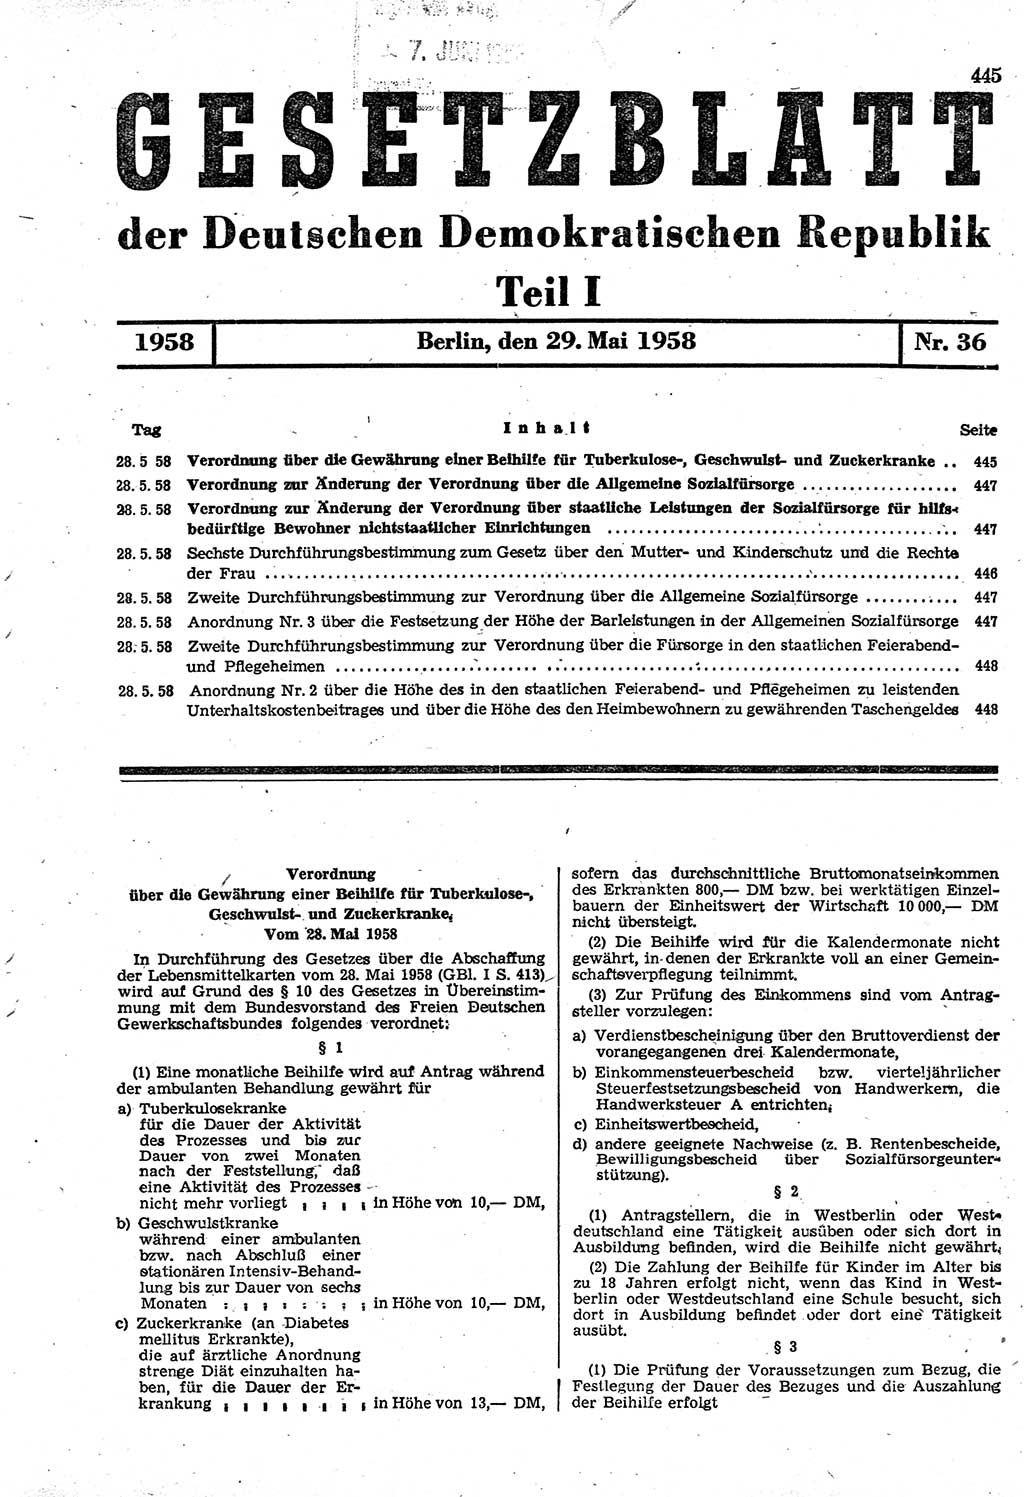 Gesetzblatt (GBl.) der Deutschen Demokratischen Republik (DDR) Teil â… 1958, Seite 445 (GBl. DDR â… 1958, S. 445)